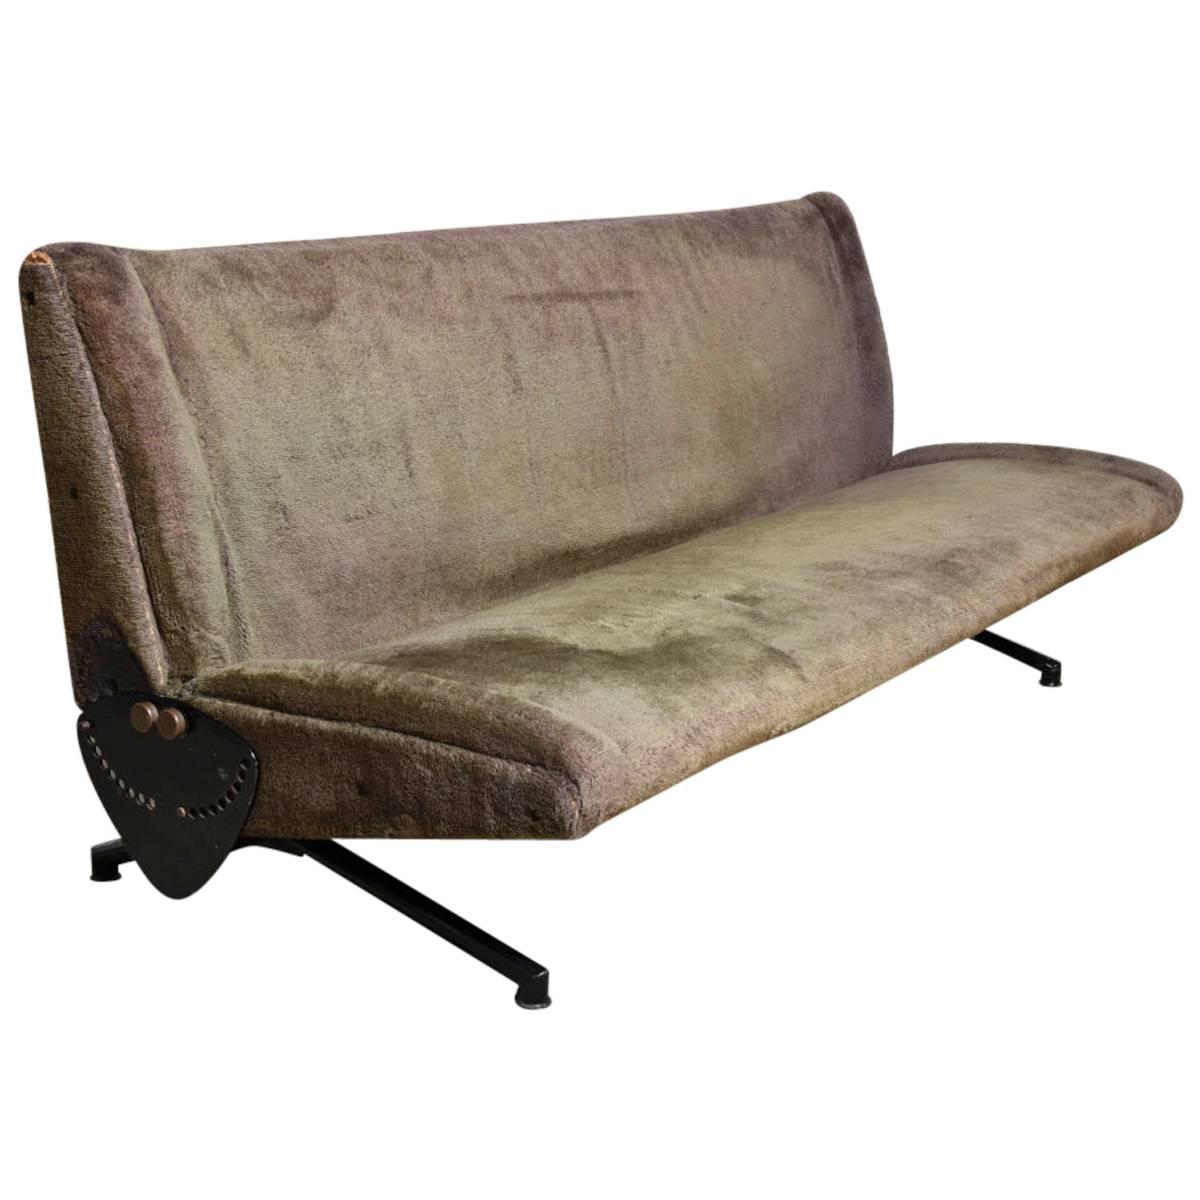 Iconic Tecno D70 Sofa Daybed Designed by Osvaldo Borsani